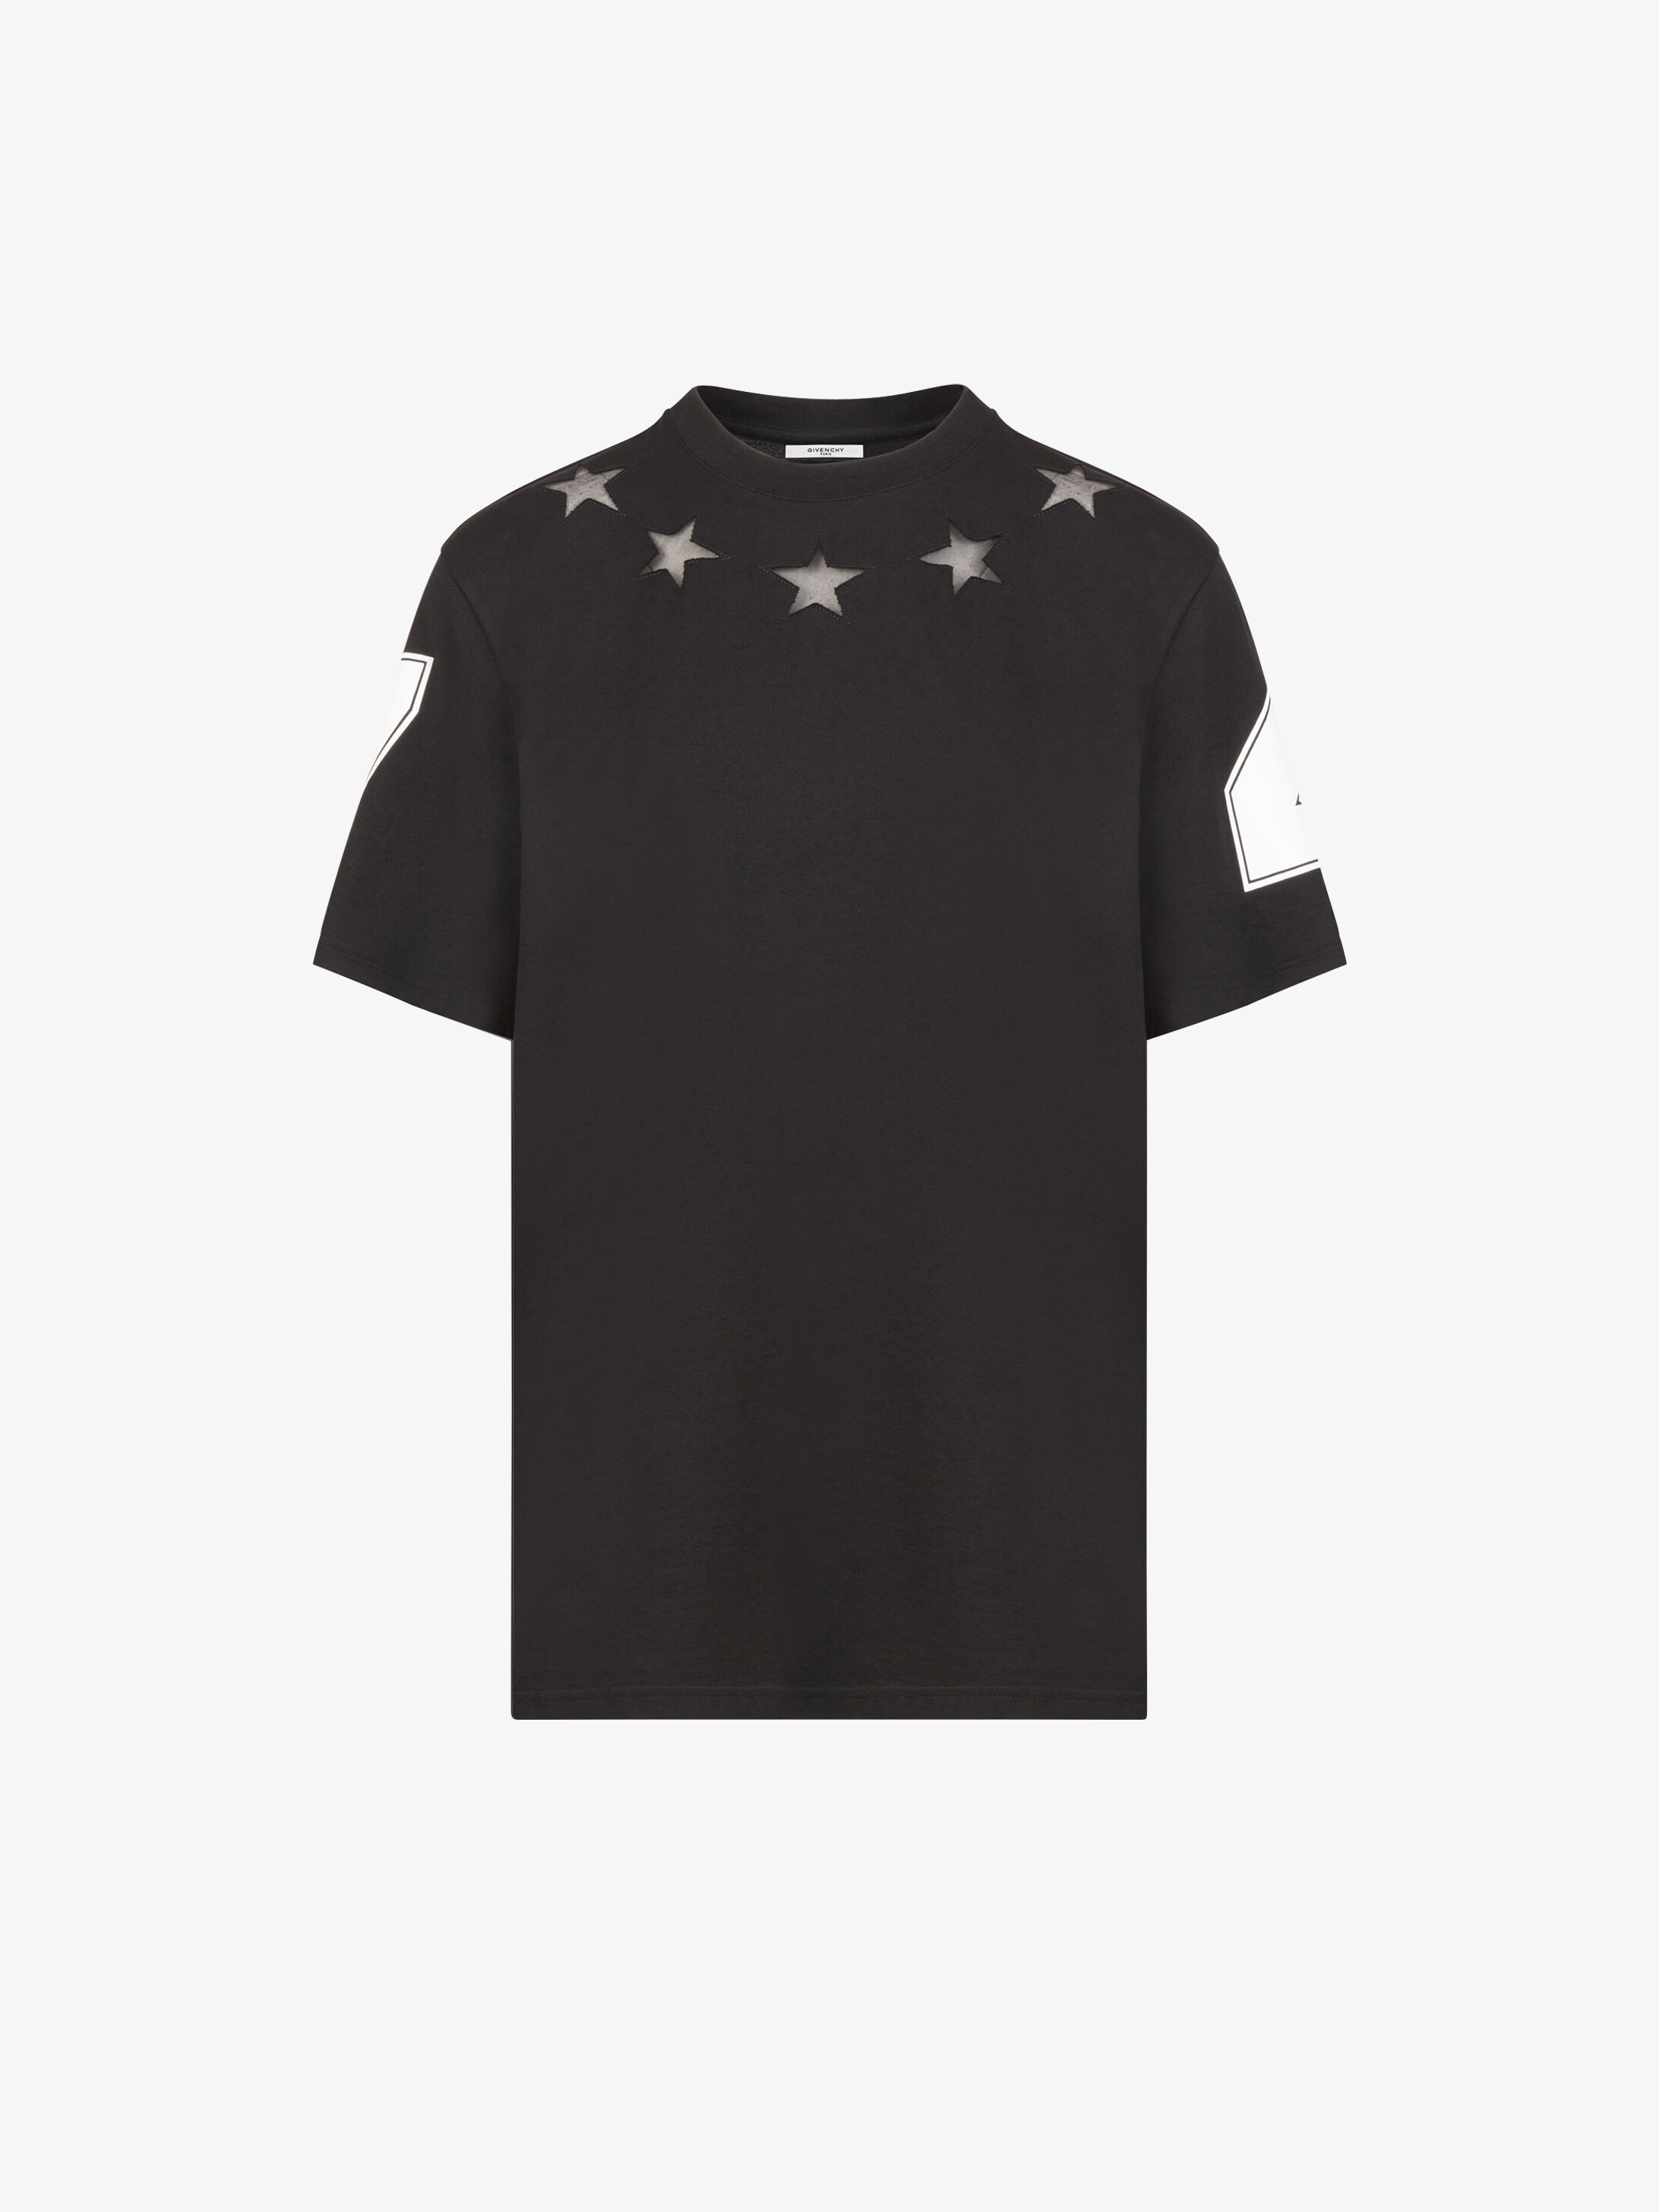 givenchy shirt stars